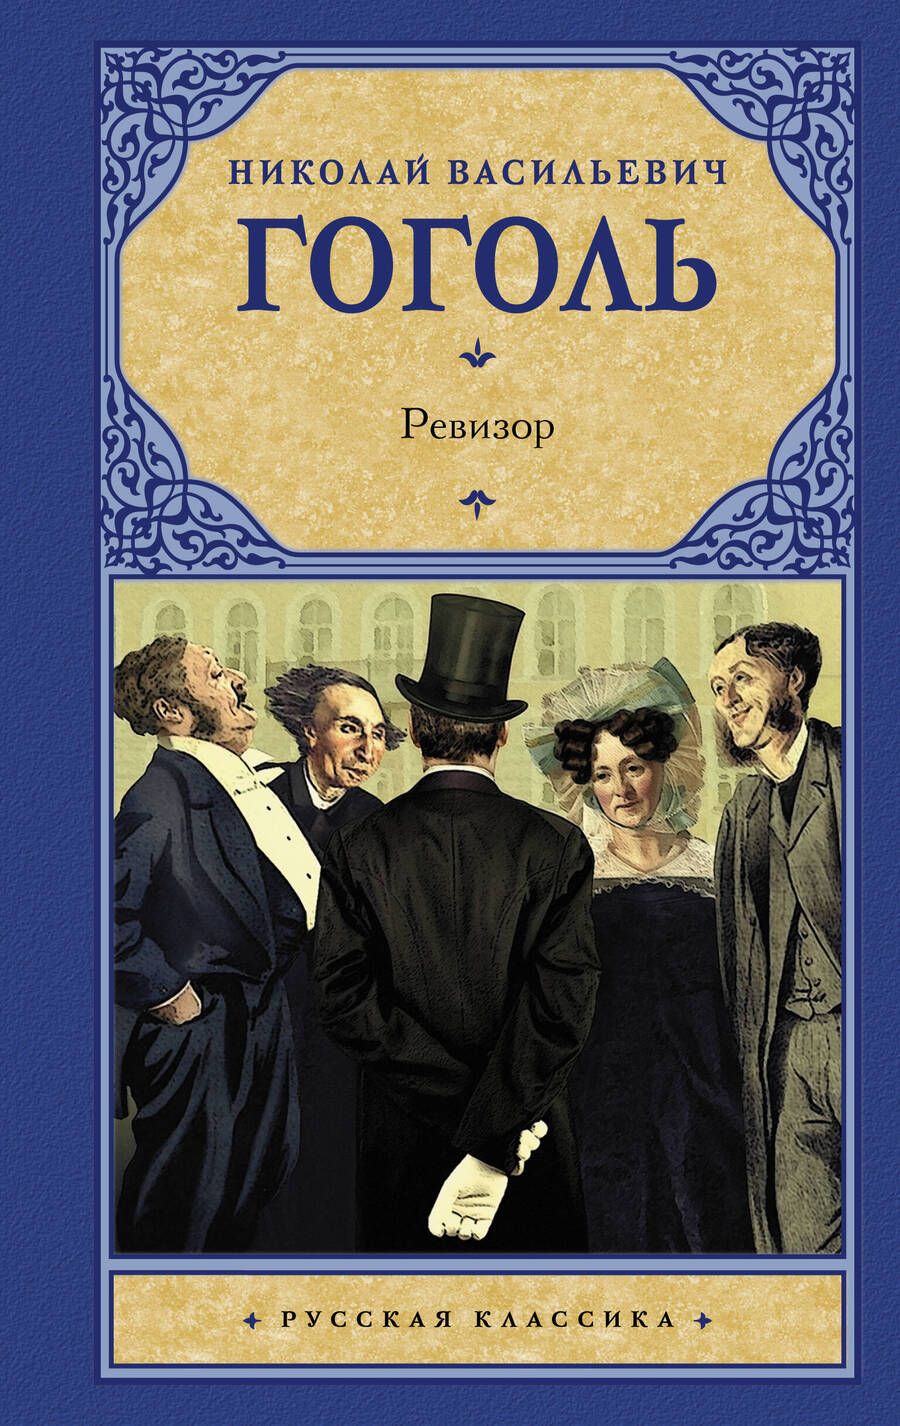 Обложка книги "Гоголь: Ревизор"